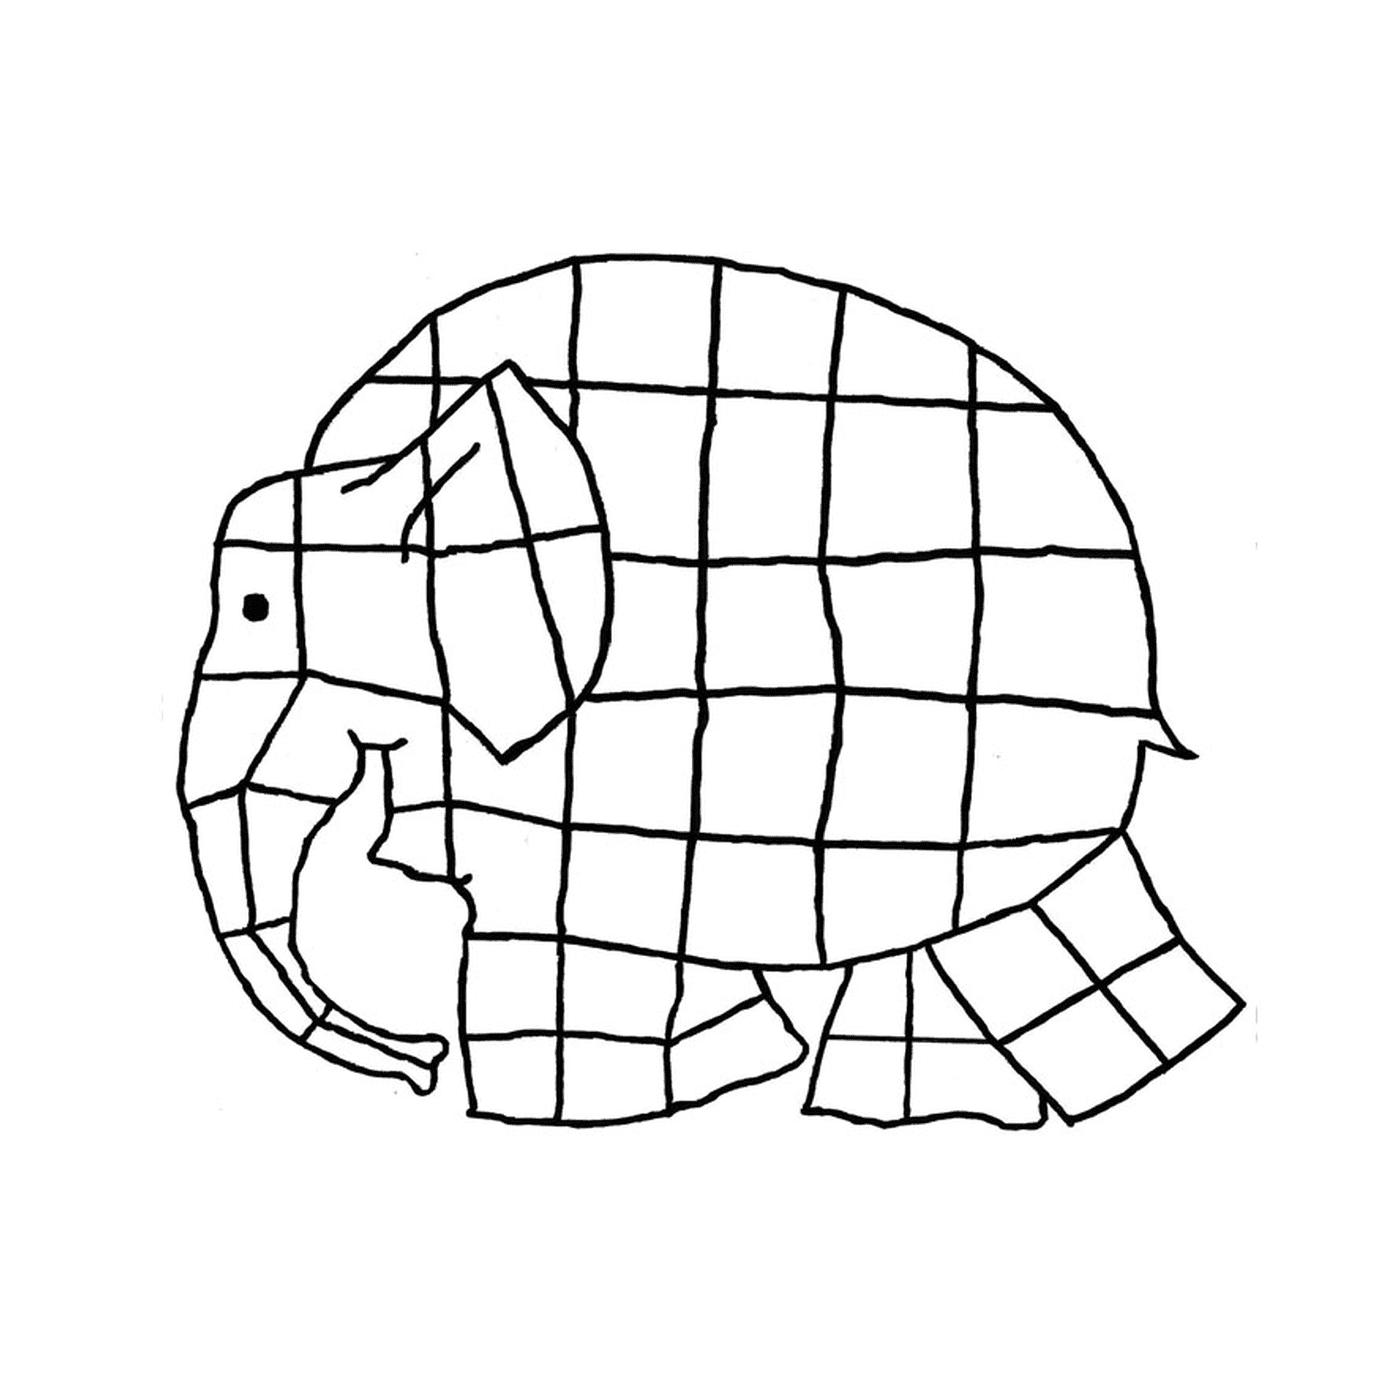  Слон, сделанный из квадратов 